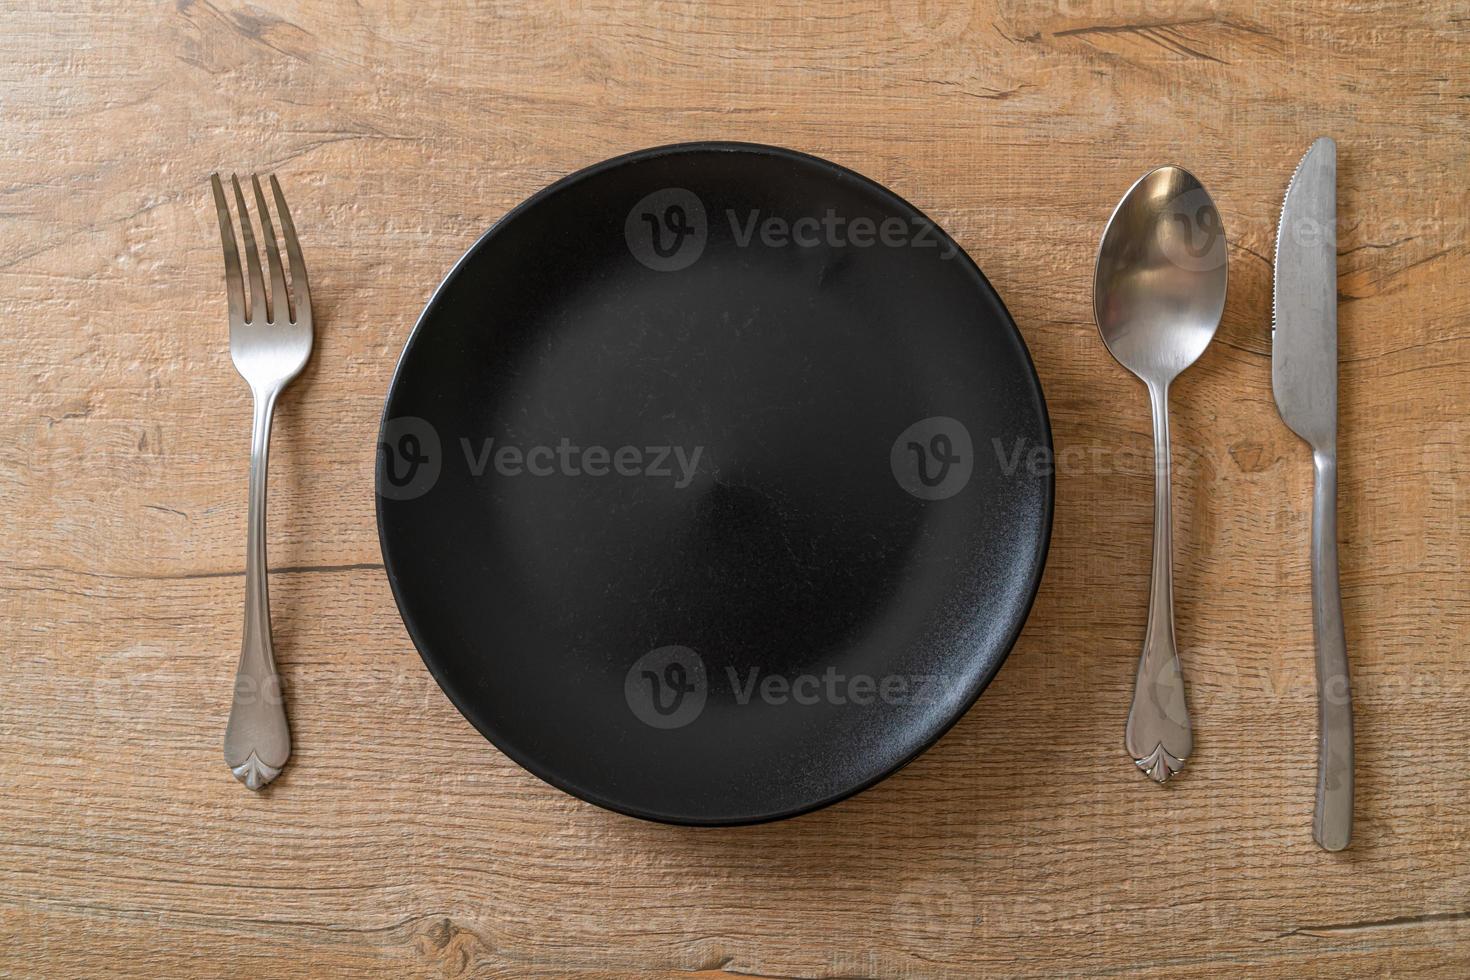 plato o plato vacío con cuchillo, tenedor y cuchara foto